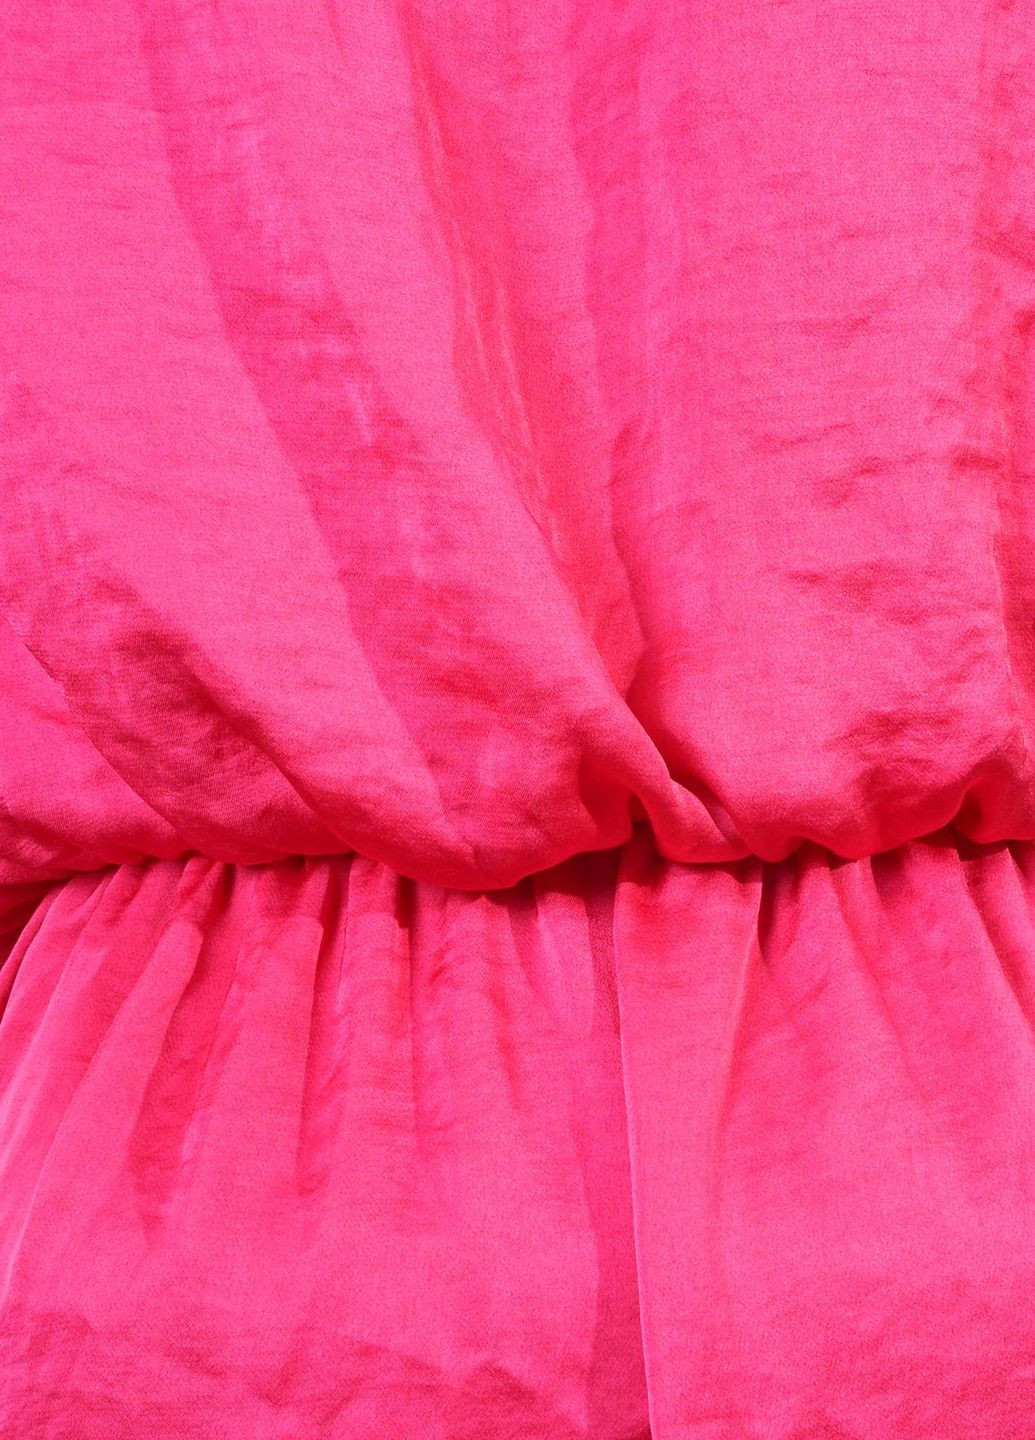 Розовое платье Just-R